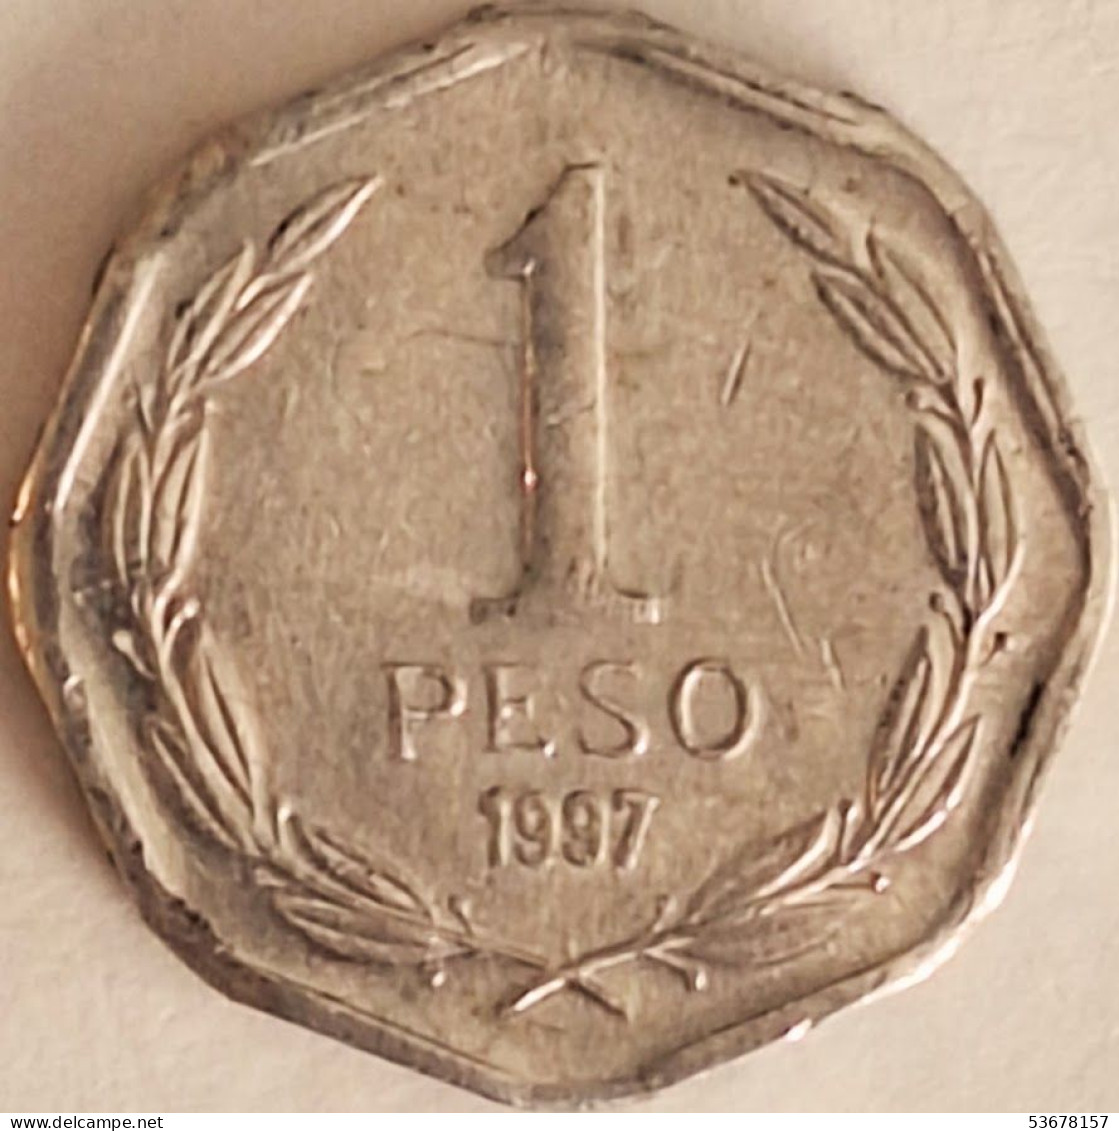 Chile - Peso 1997, KM# 231 (#3433) - Chili